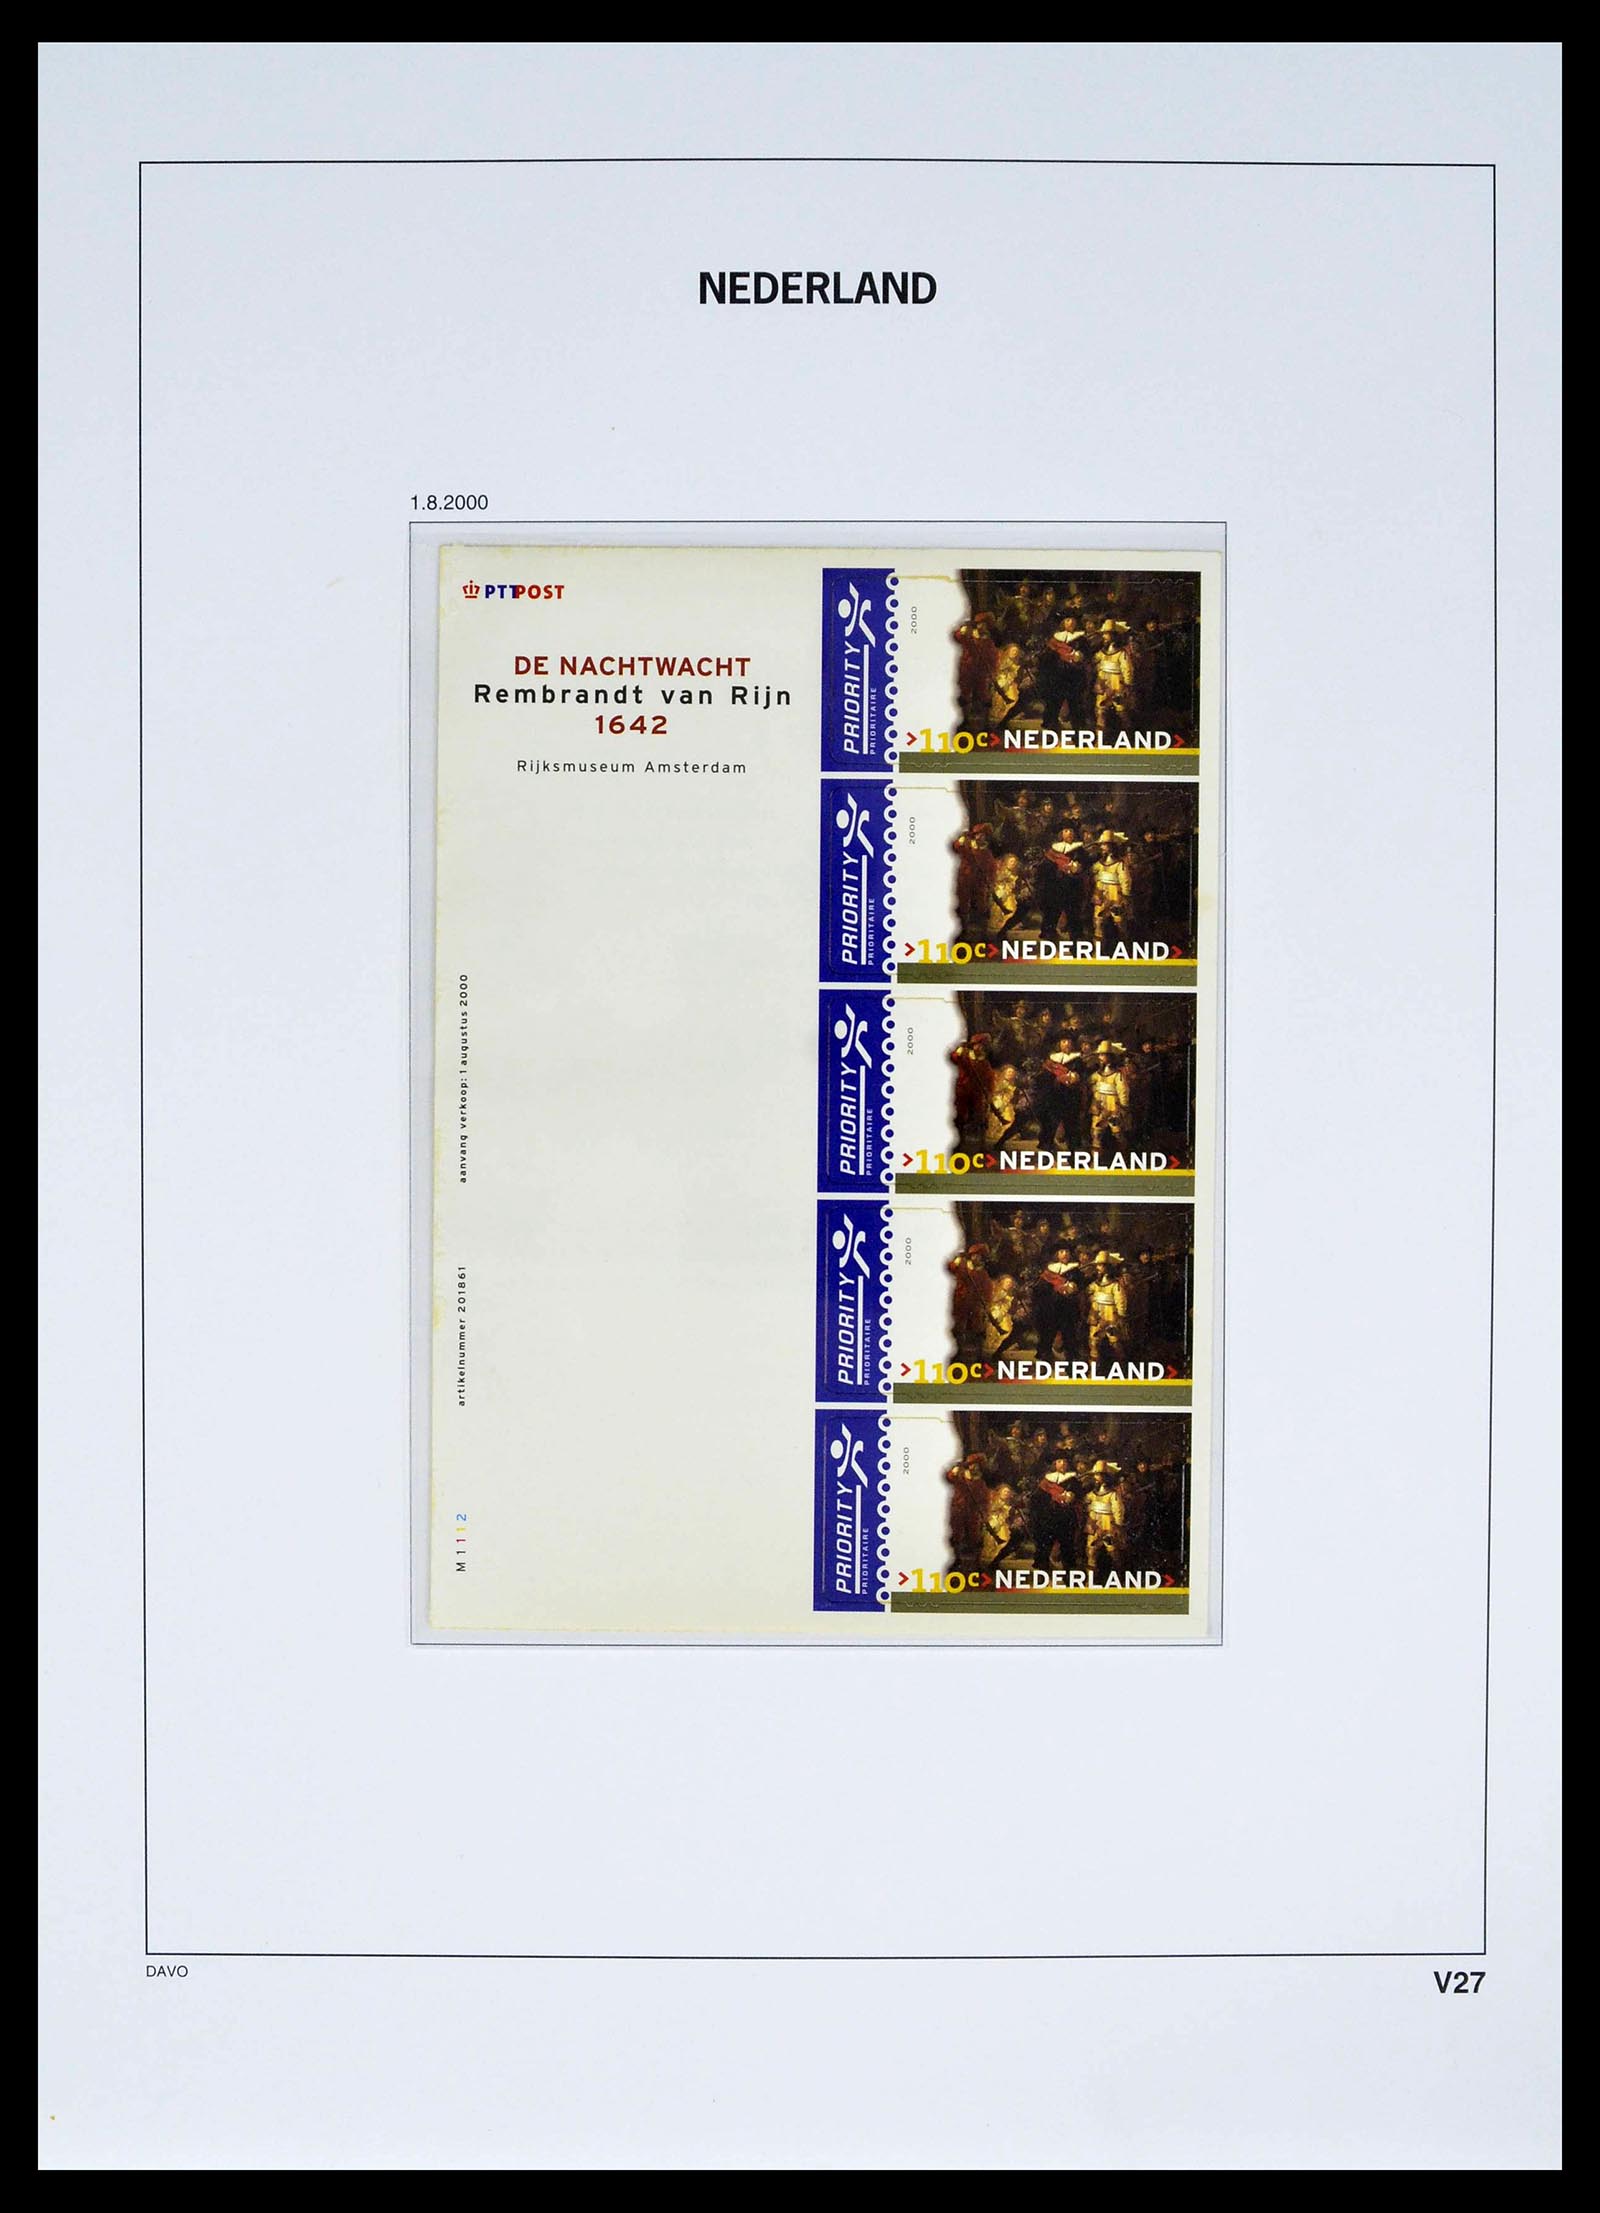 39134 0039 - Stamp collection 39134 Netherlands sheetlets 1992-2019!